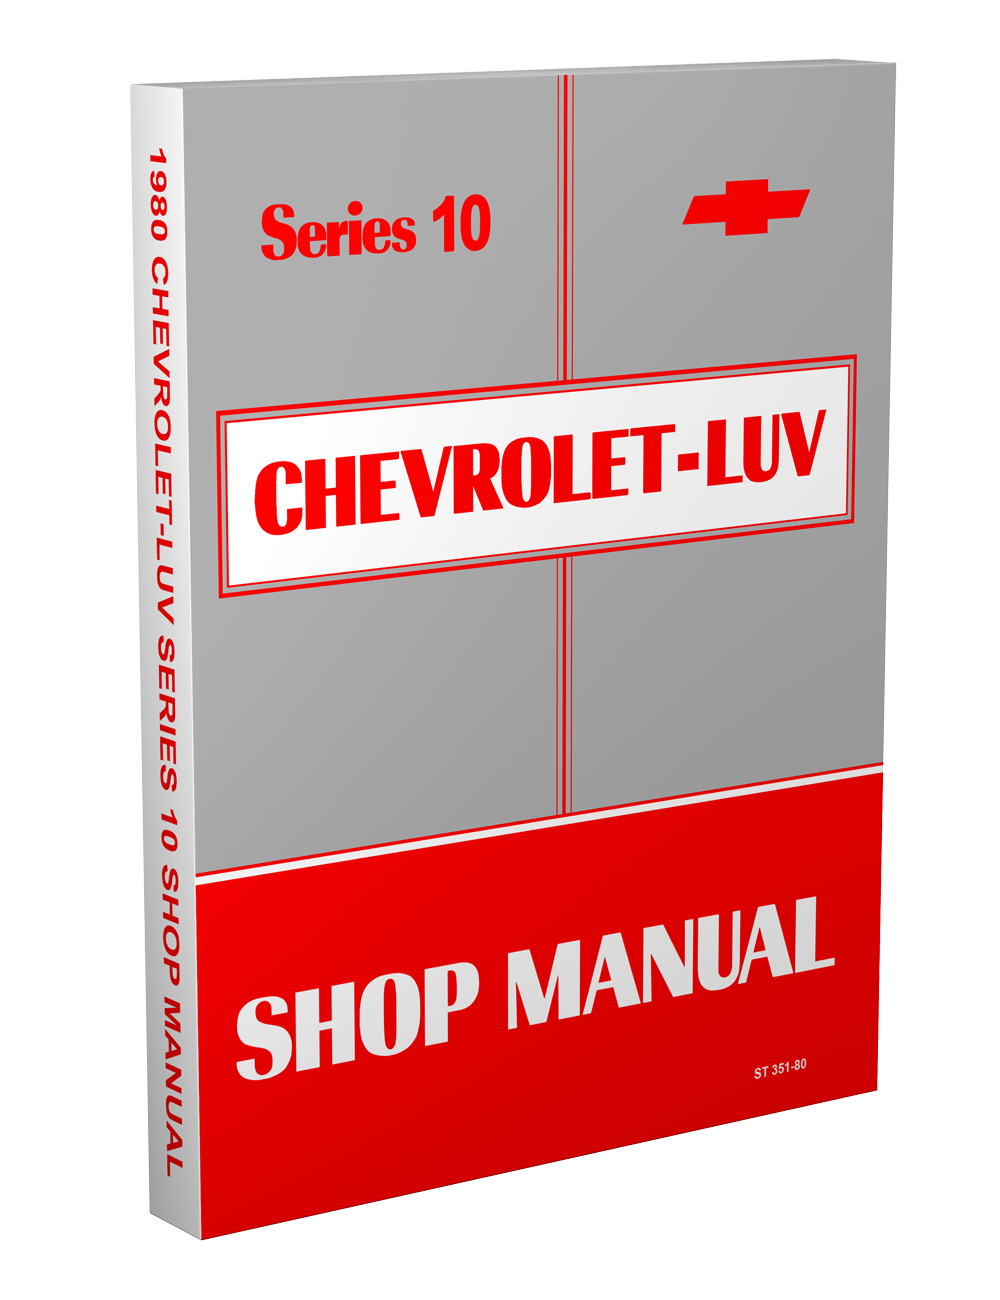 1980 Chevy Luv Series 10 Repair Manual Original 